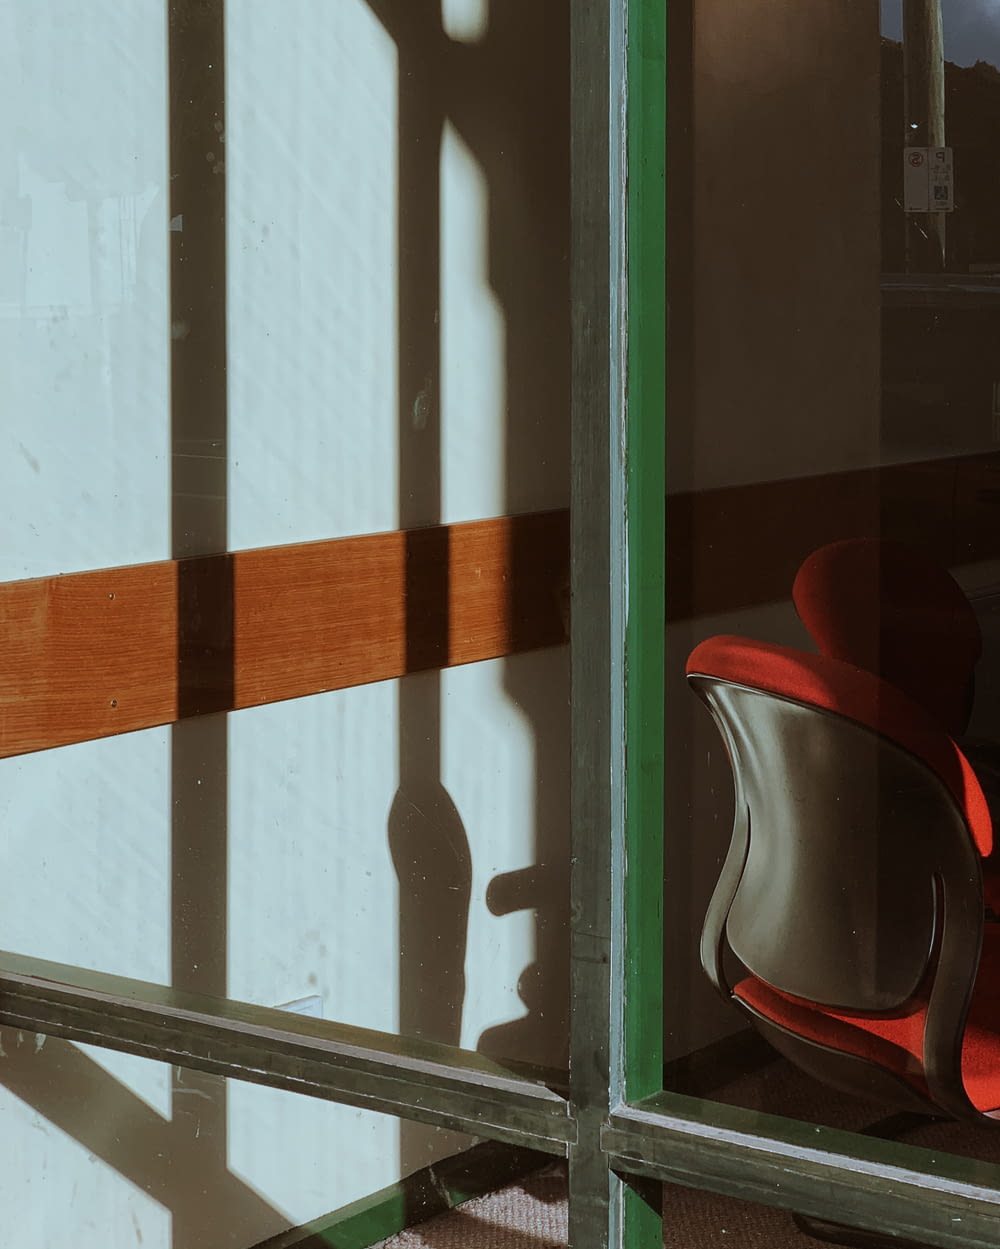 sedia rossa e nera accanto alla finestra di vetro